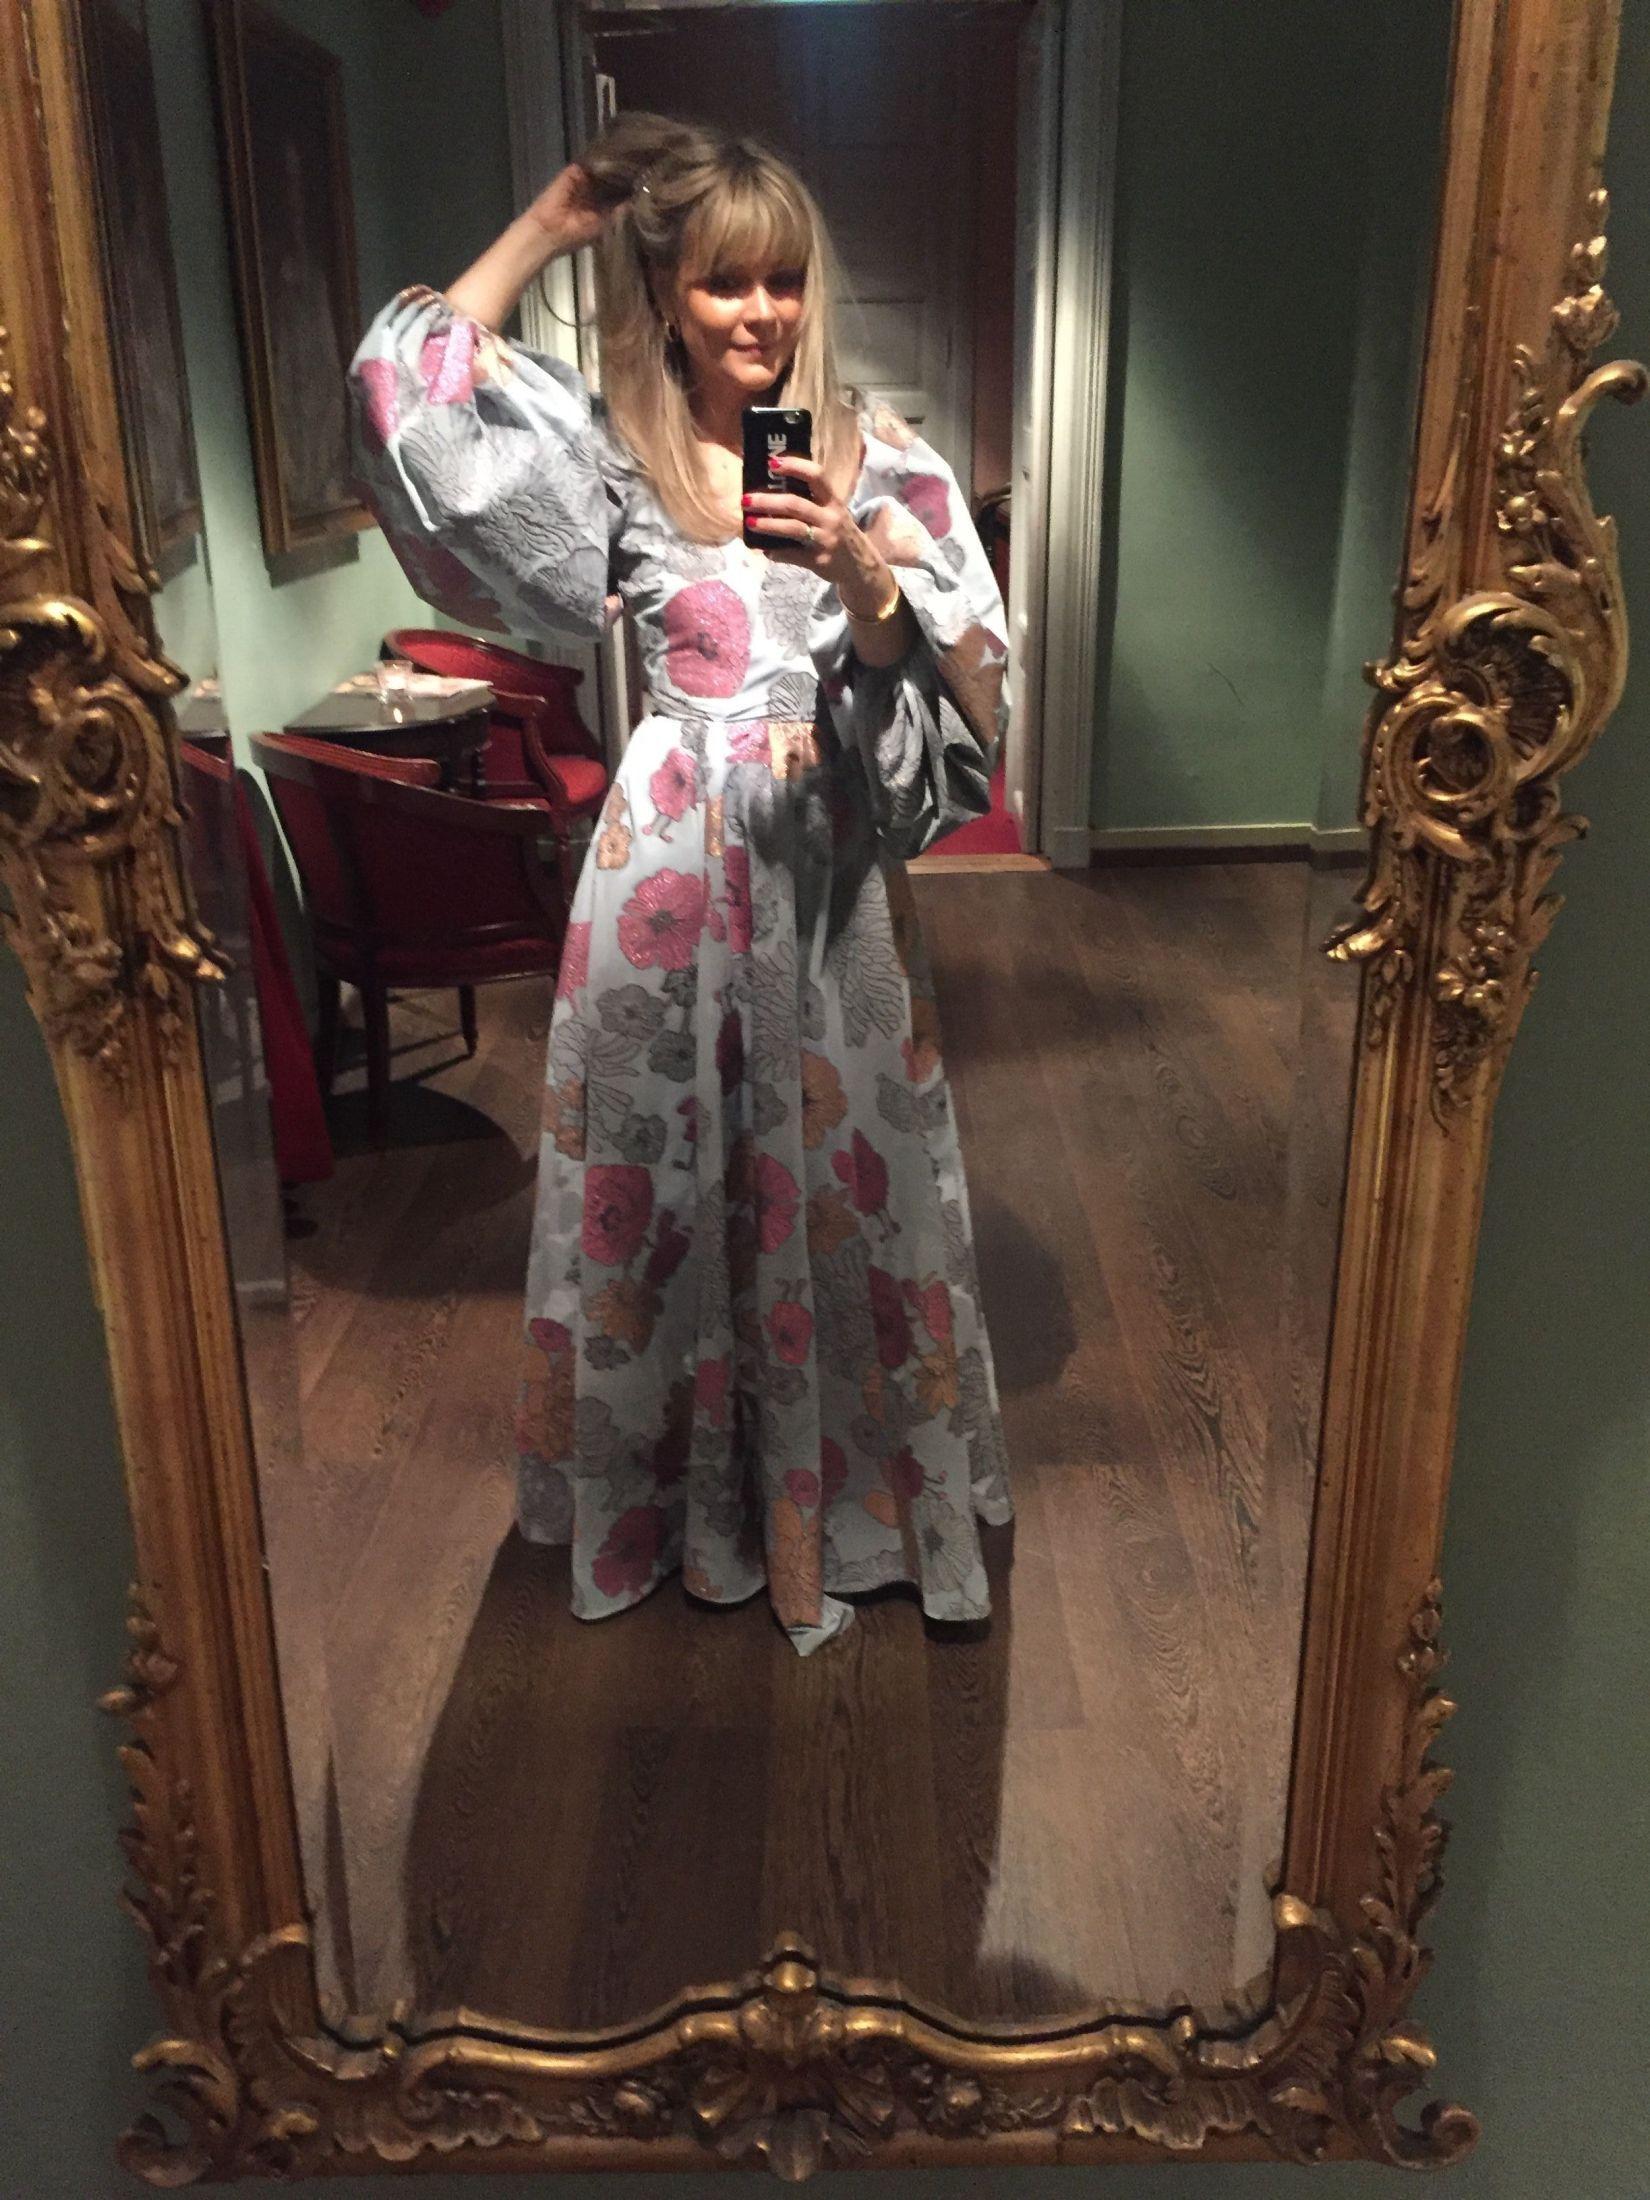 GLAMORØS: – Jeg gleder meg til Costume Awards i 2020, her i Stine Goya kreasjonen jeg hadde på meg sist, en drøm av en kjole. Foto: Privat